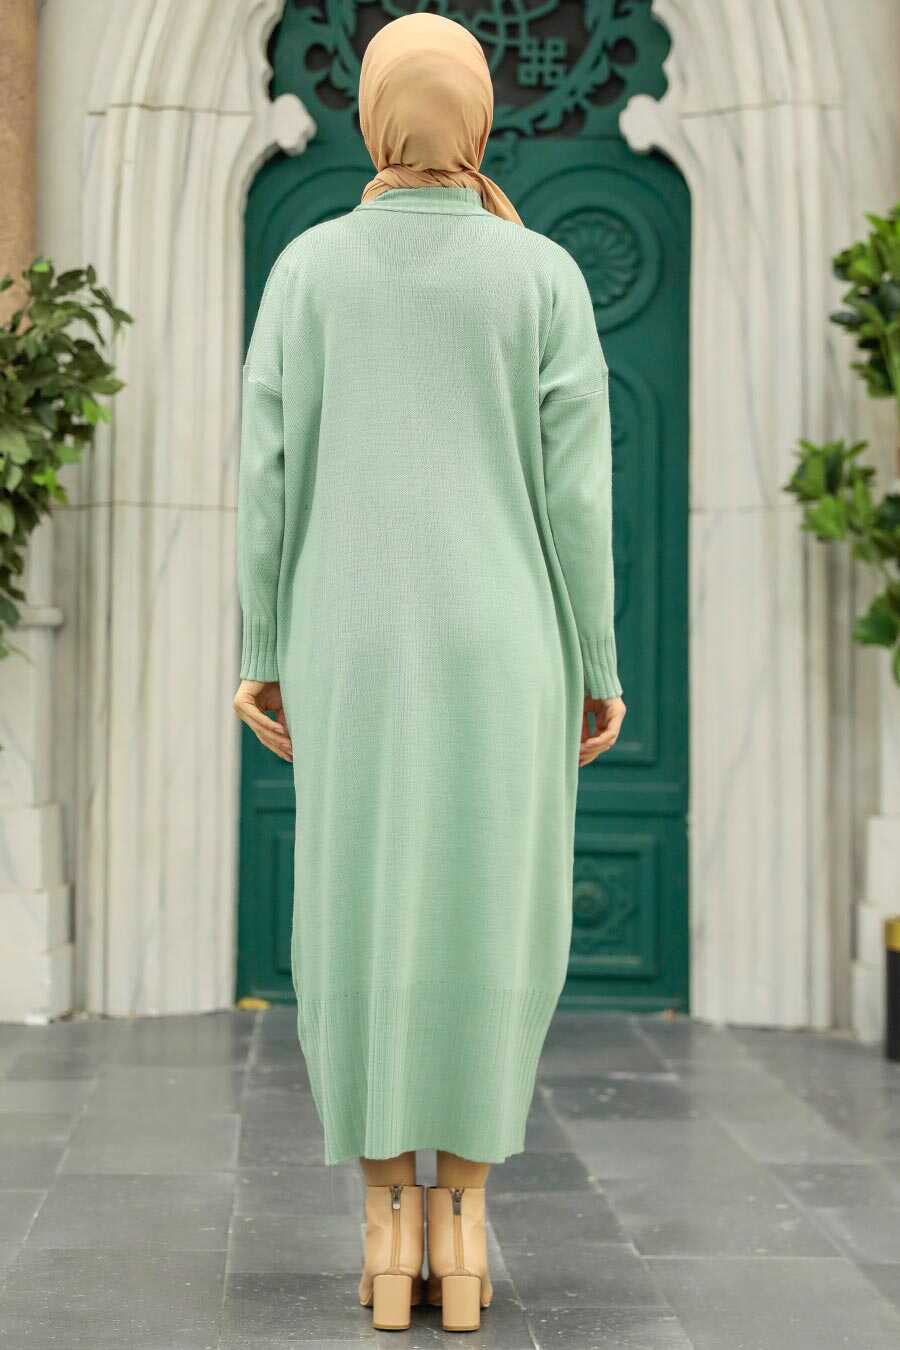 Neva Style - Mint Long Dress for Muslim Ladies Knitwear Dress 3409MINT